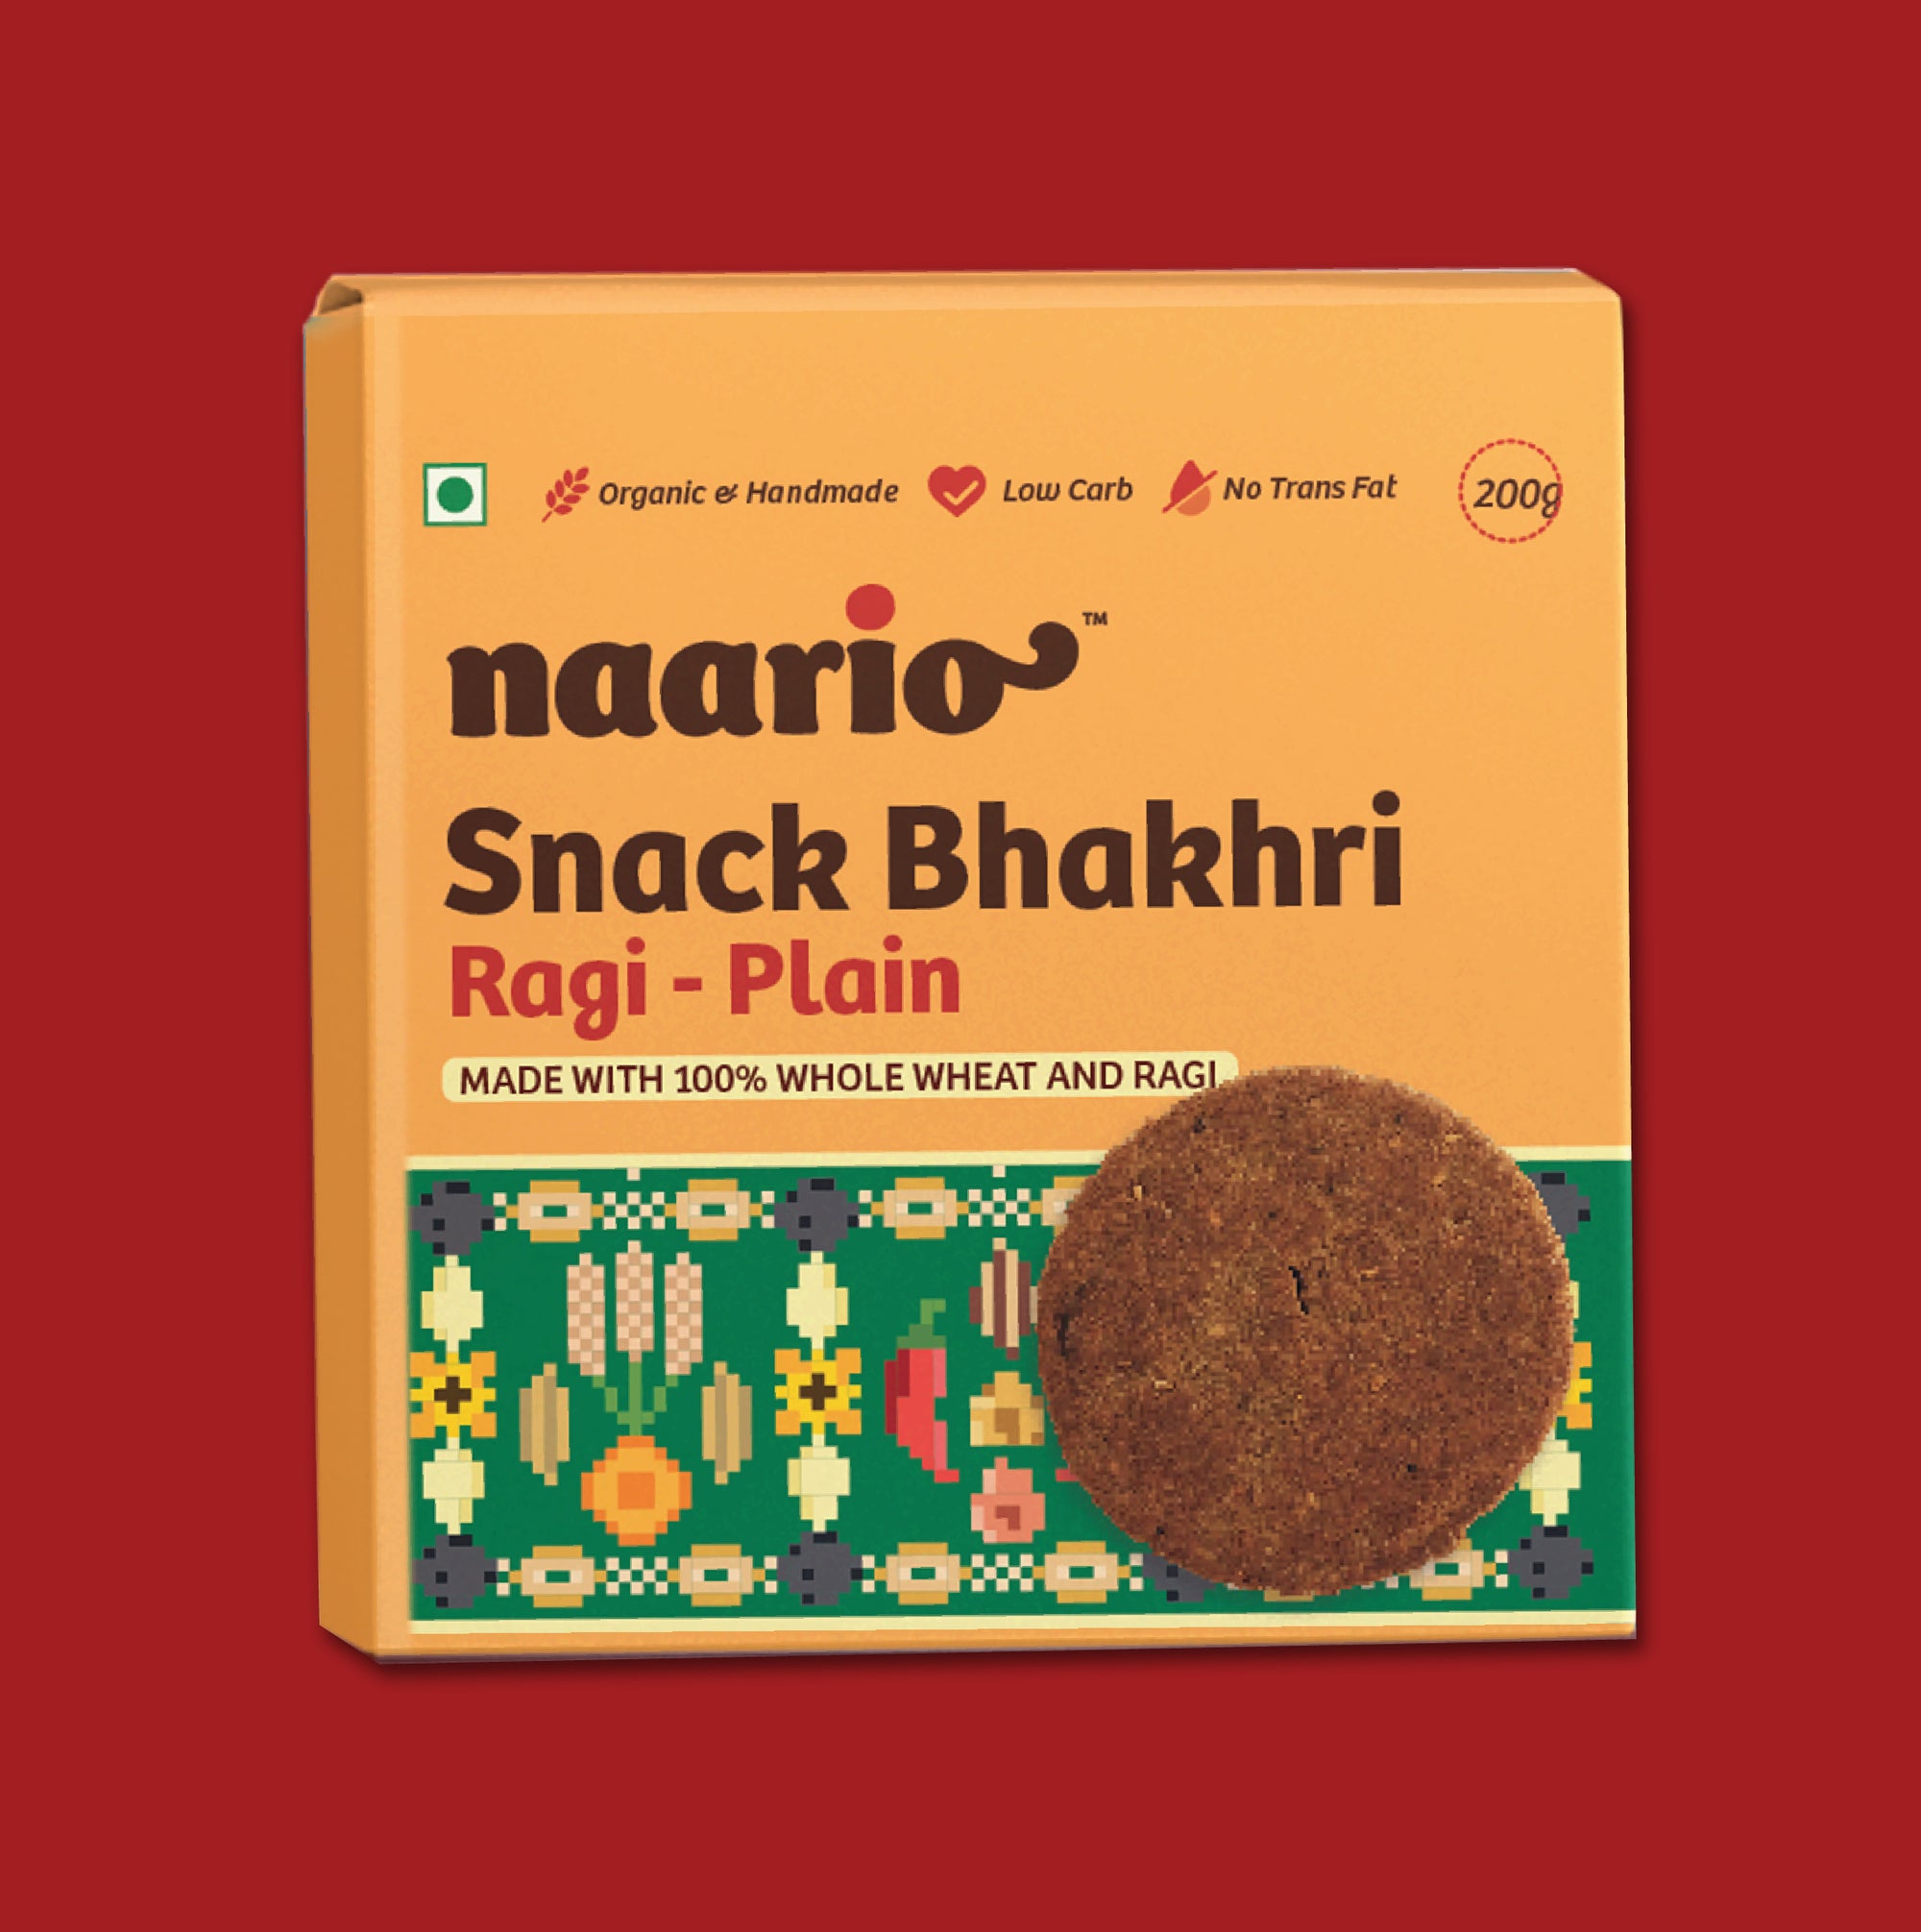 Naario Snack Bhakhri